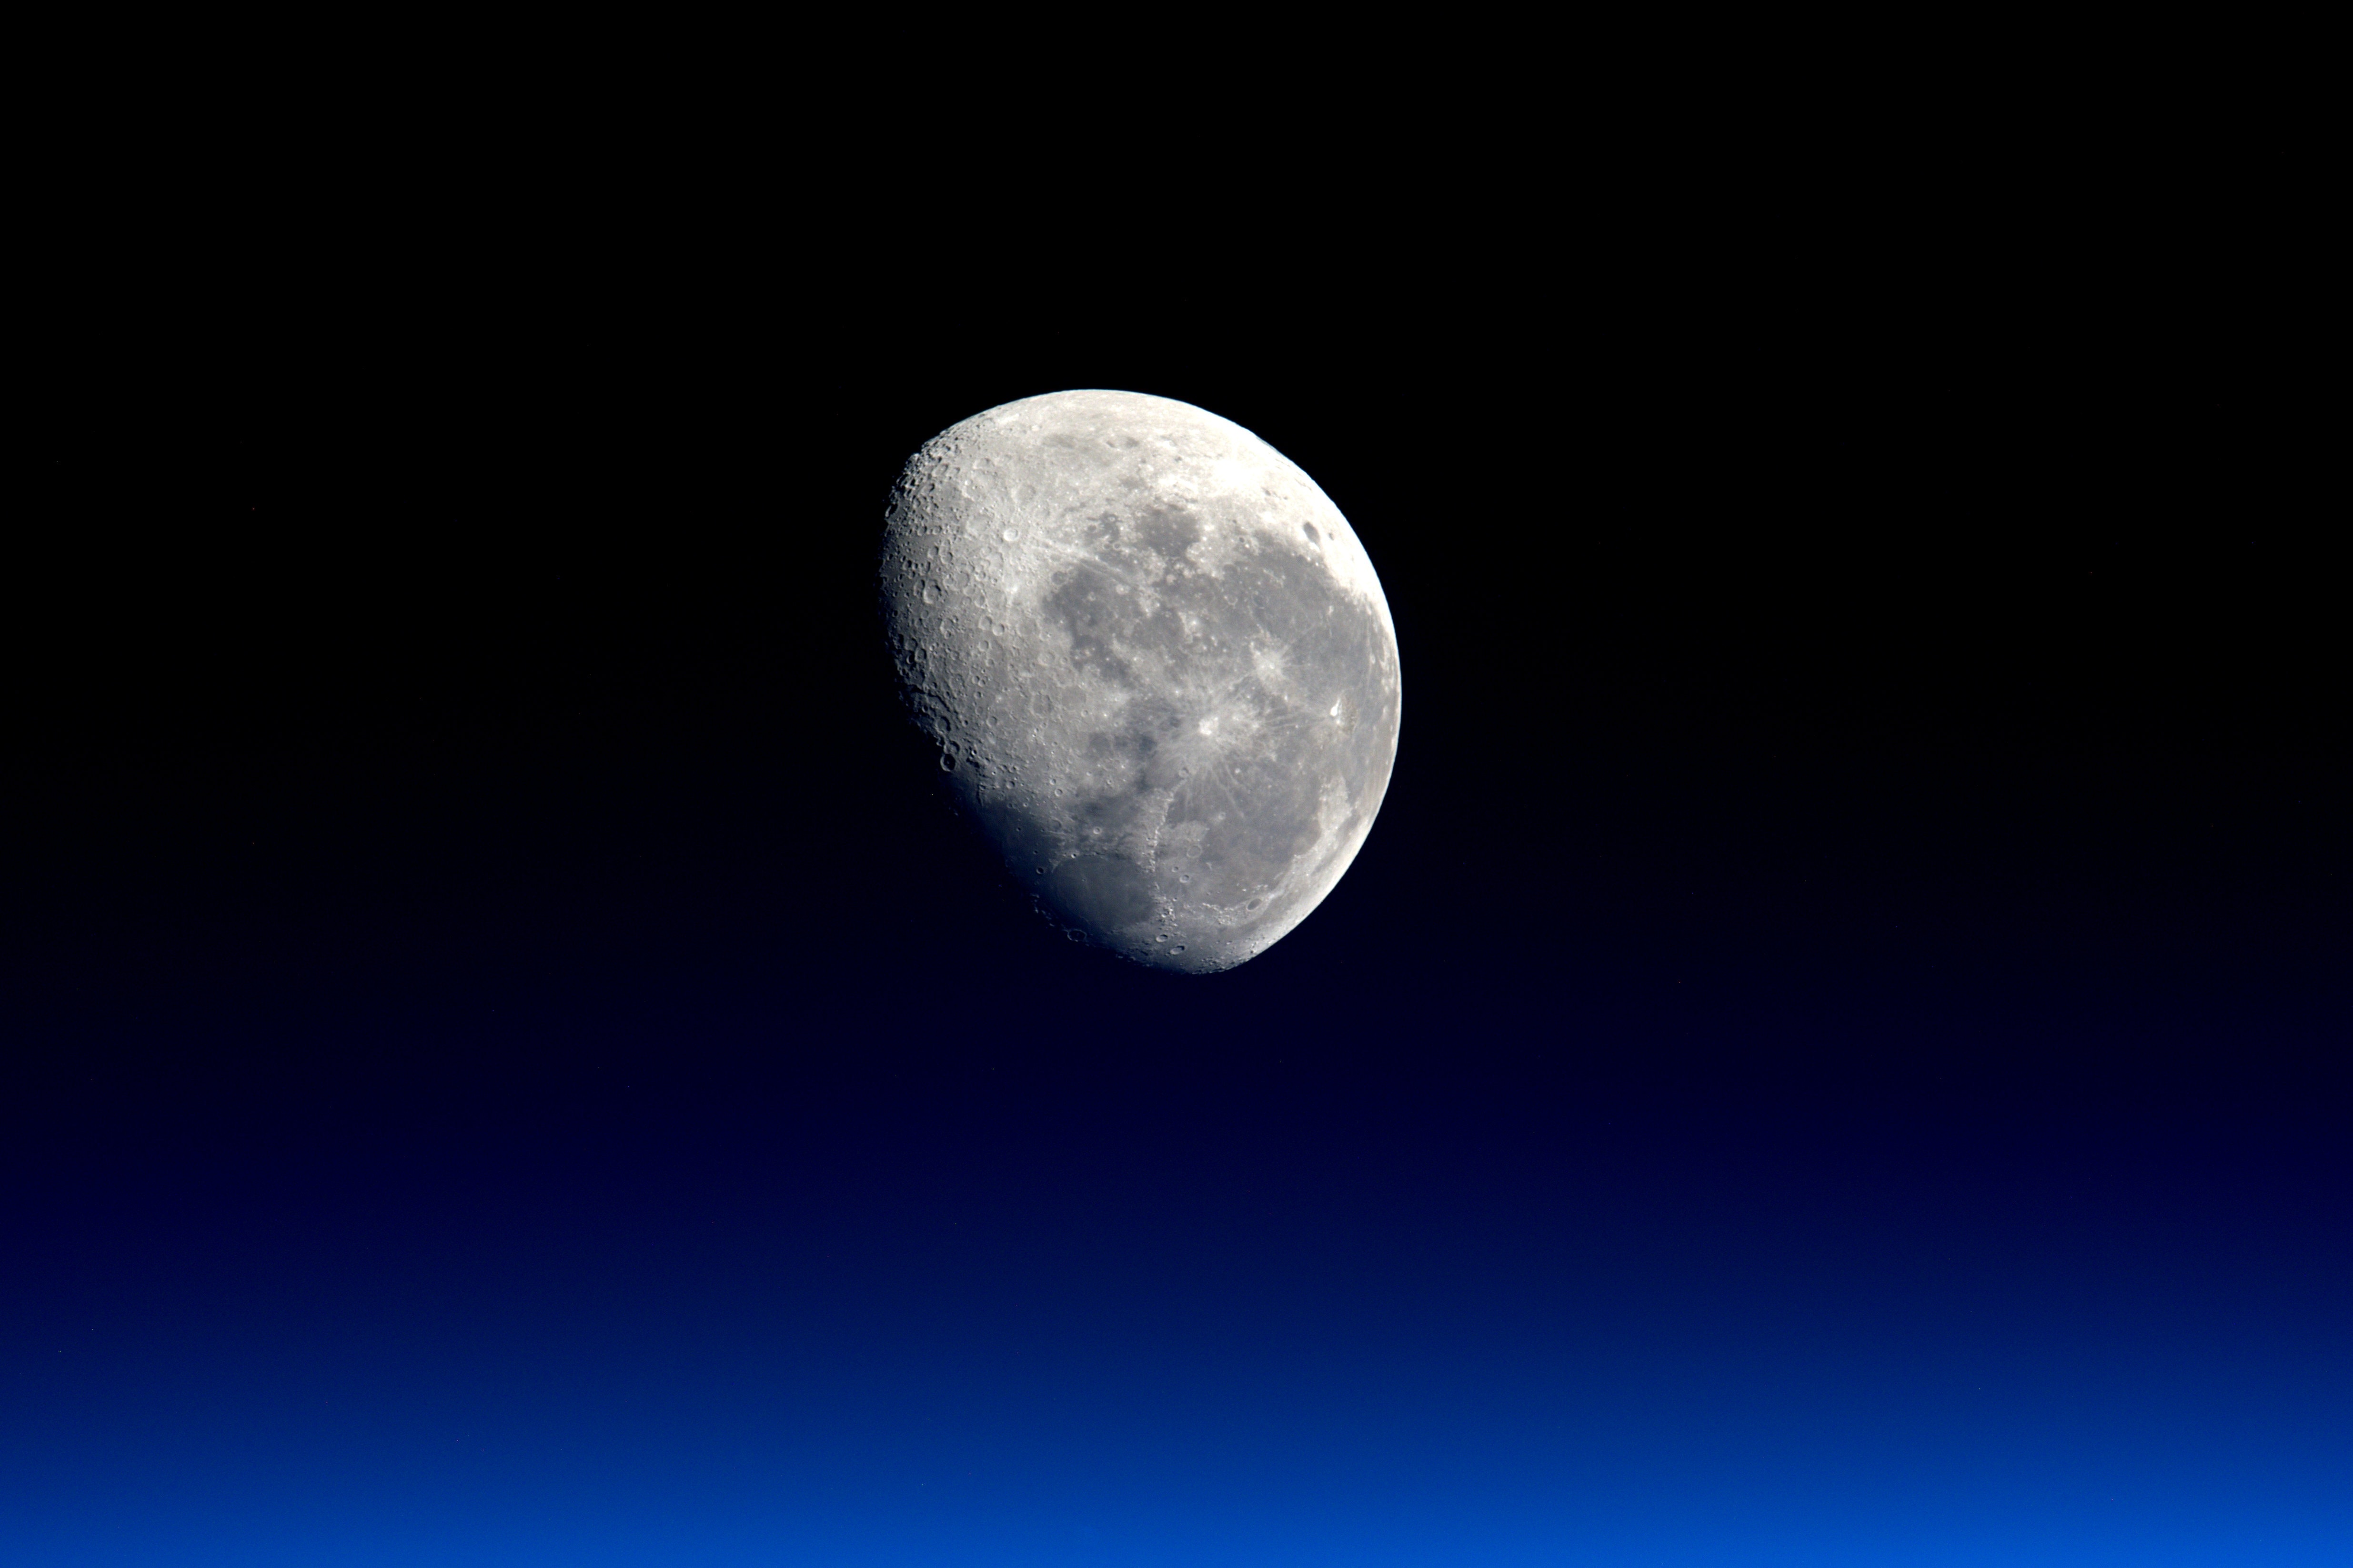 Moon photo from NASA